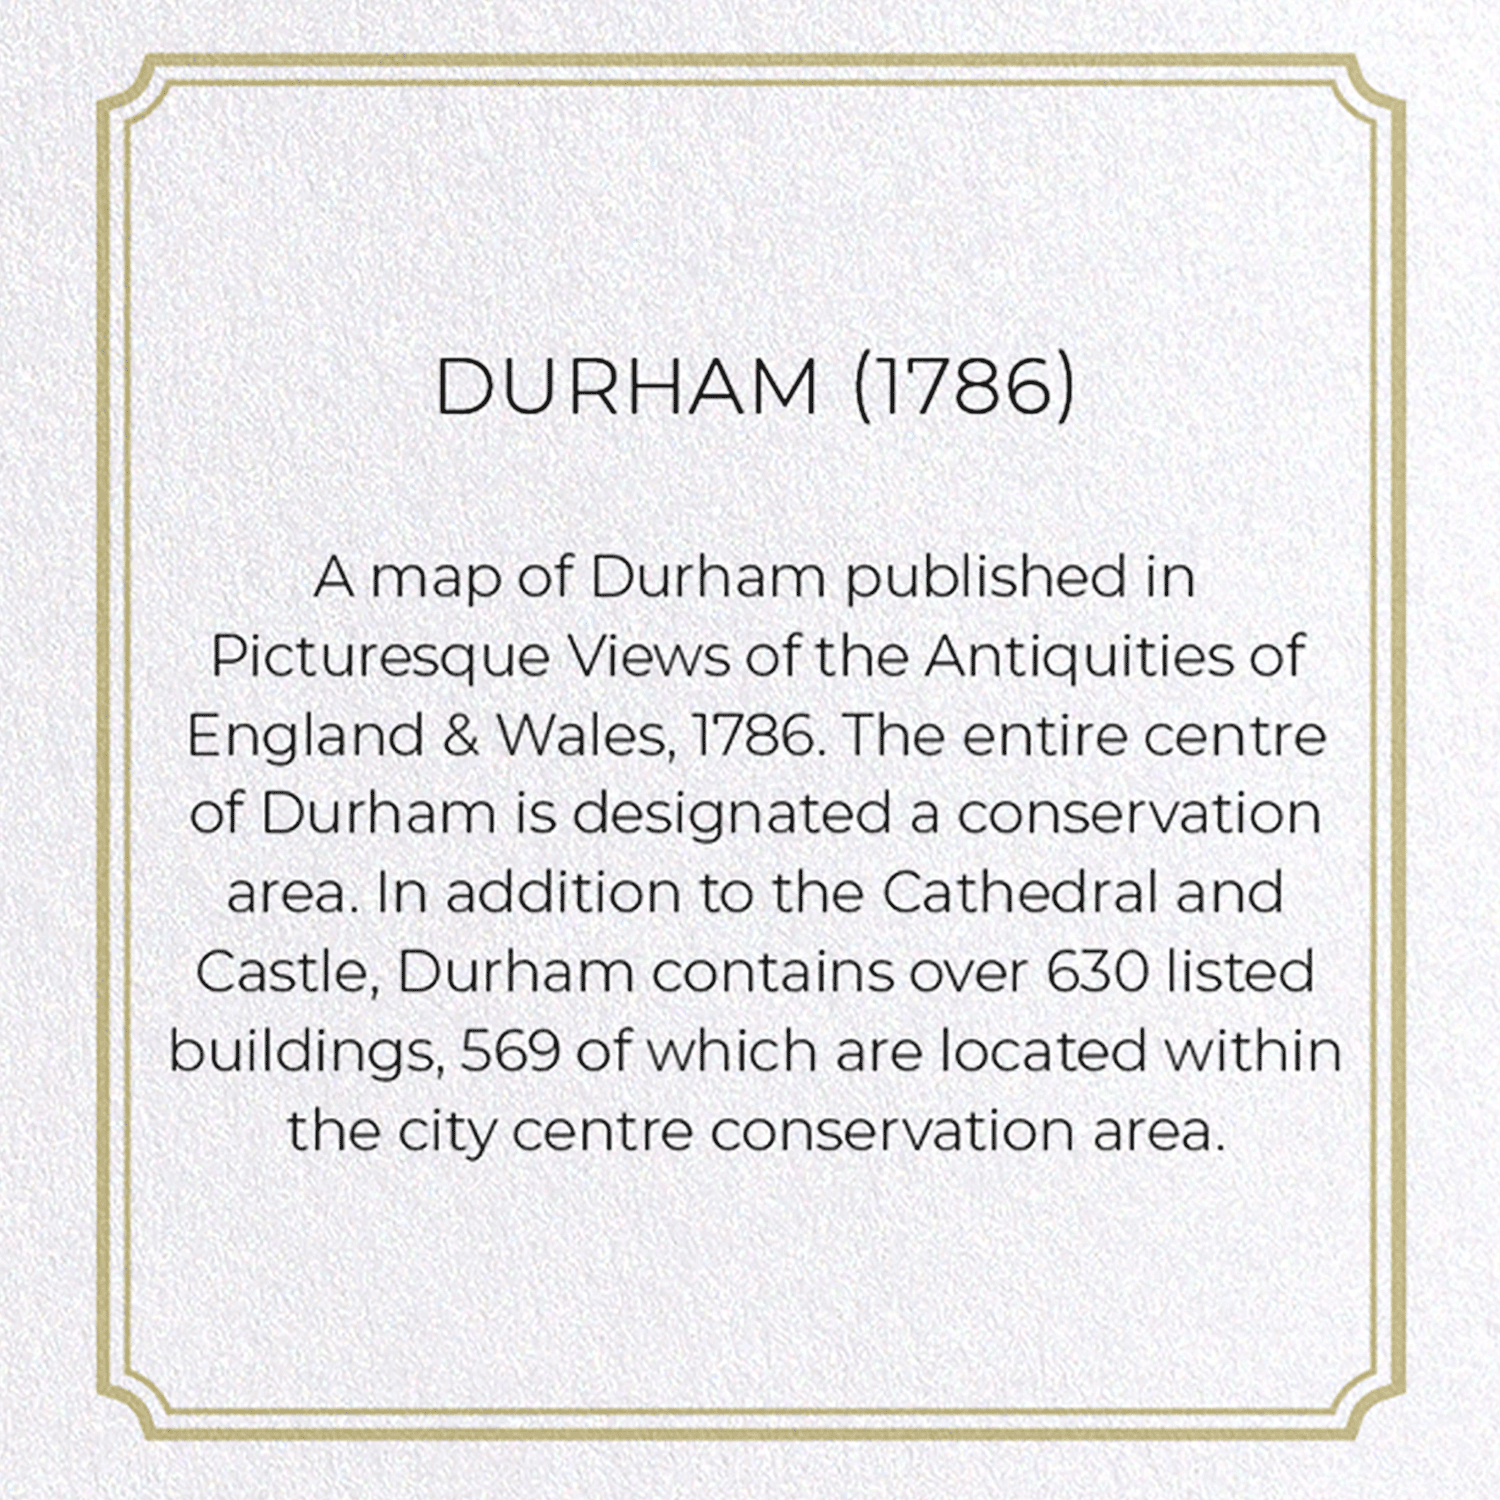 DURHAM (1786)